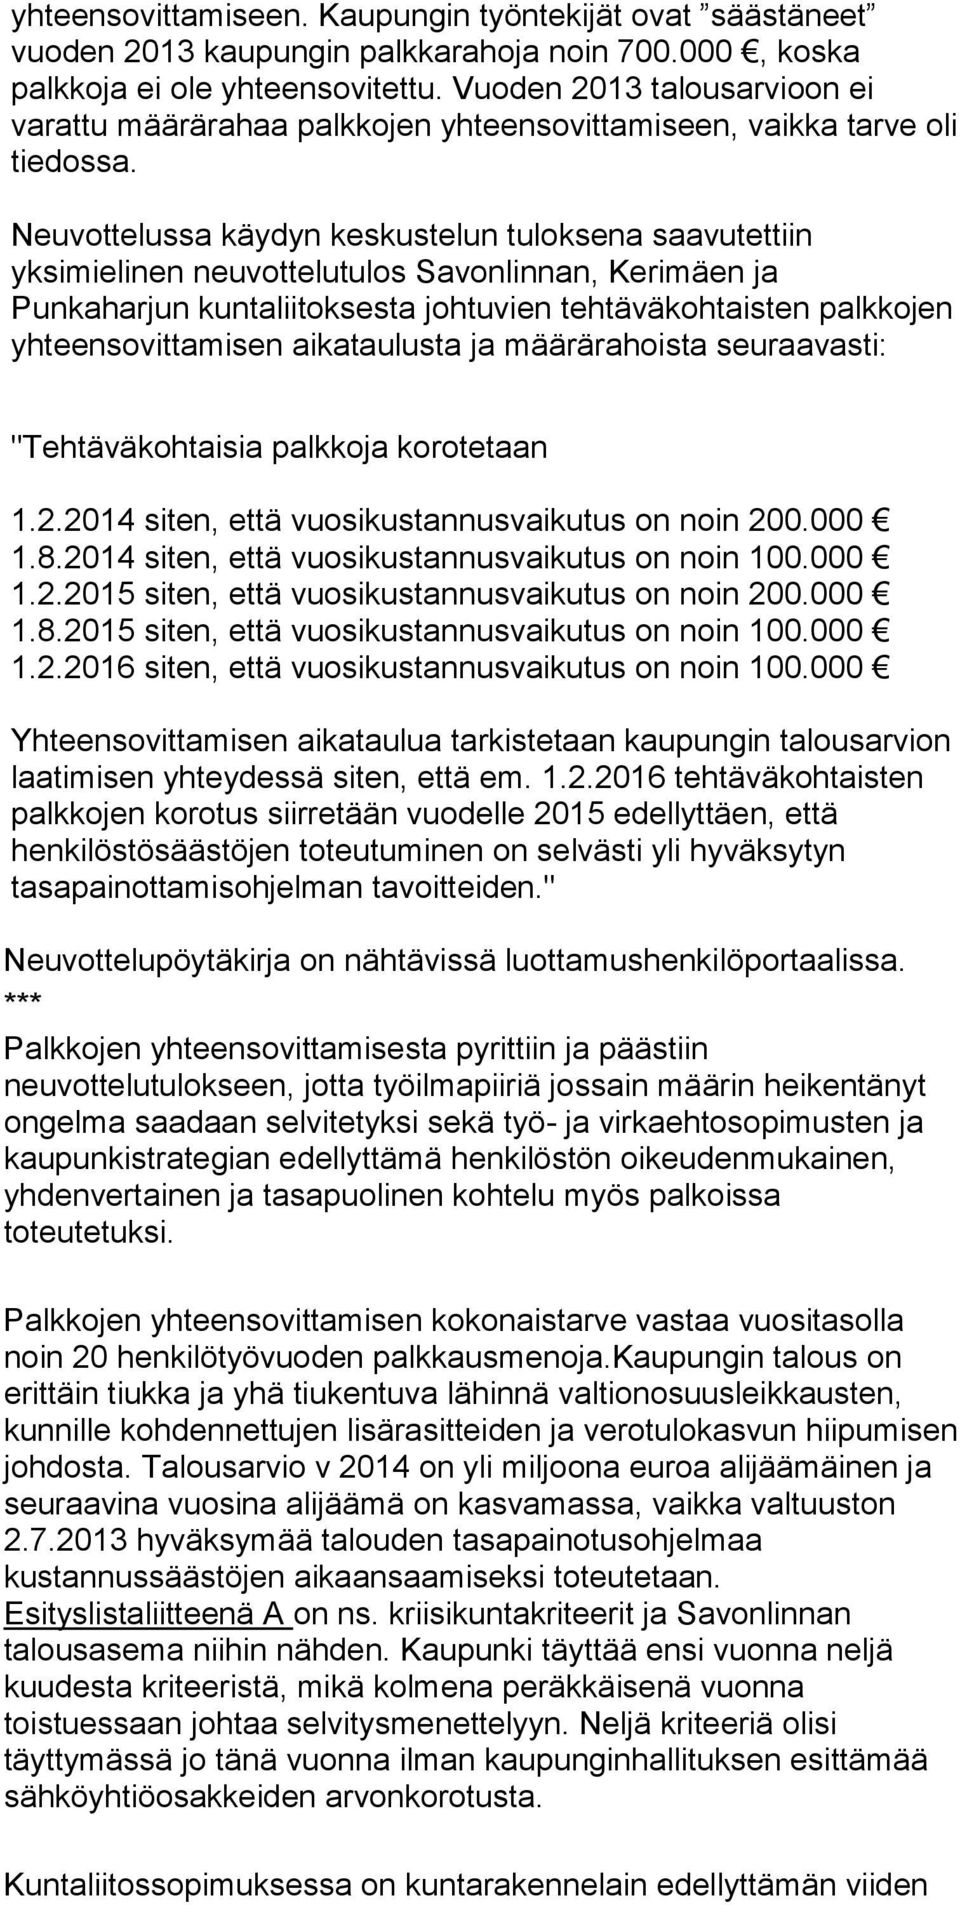 Neuvottelussa käydyn keskustelun tuloksena saavutettiin yksimielinen neuvottelutulos Savonlinnan, Kerimäen ja Punkaharjun kuntaliitoksesta johtuvien tehtäväkohtaisten palkkojen yhteensovittamisen